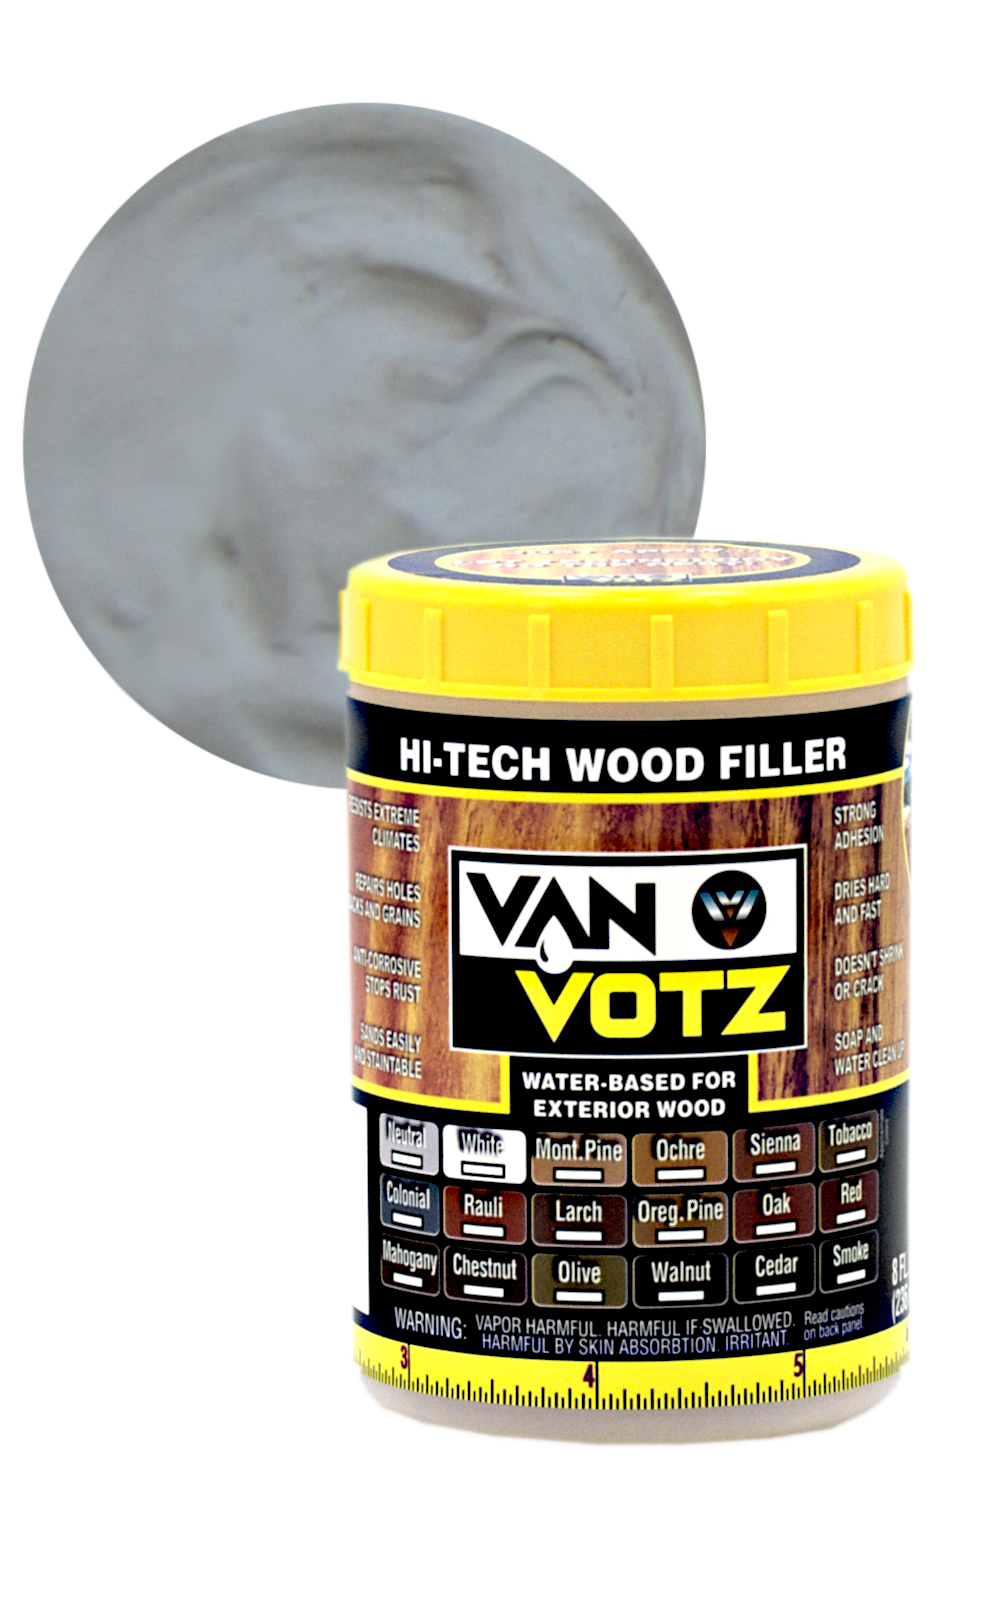 How to Apply Wood Filler – Van Votz